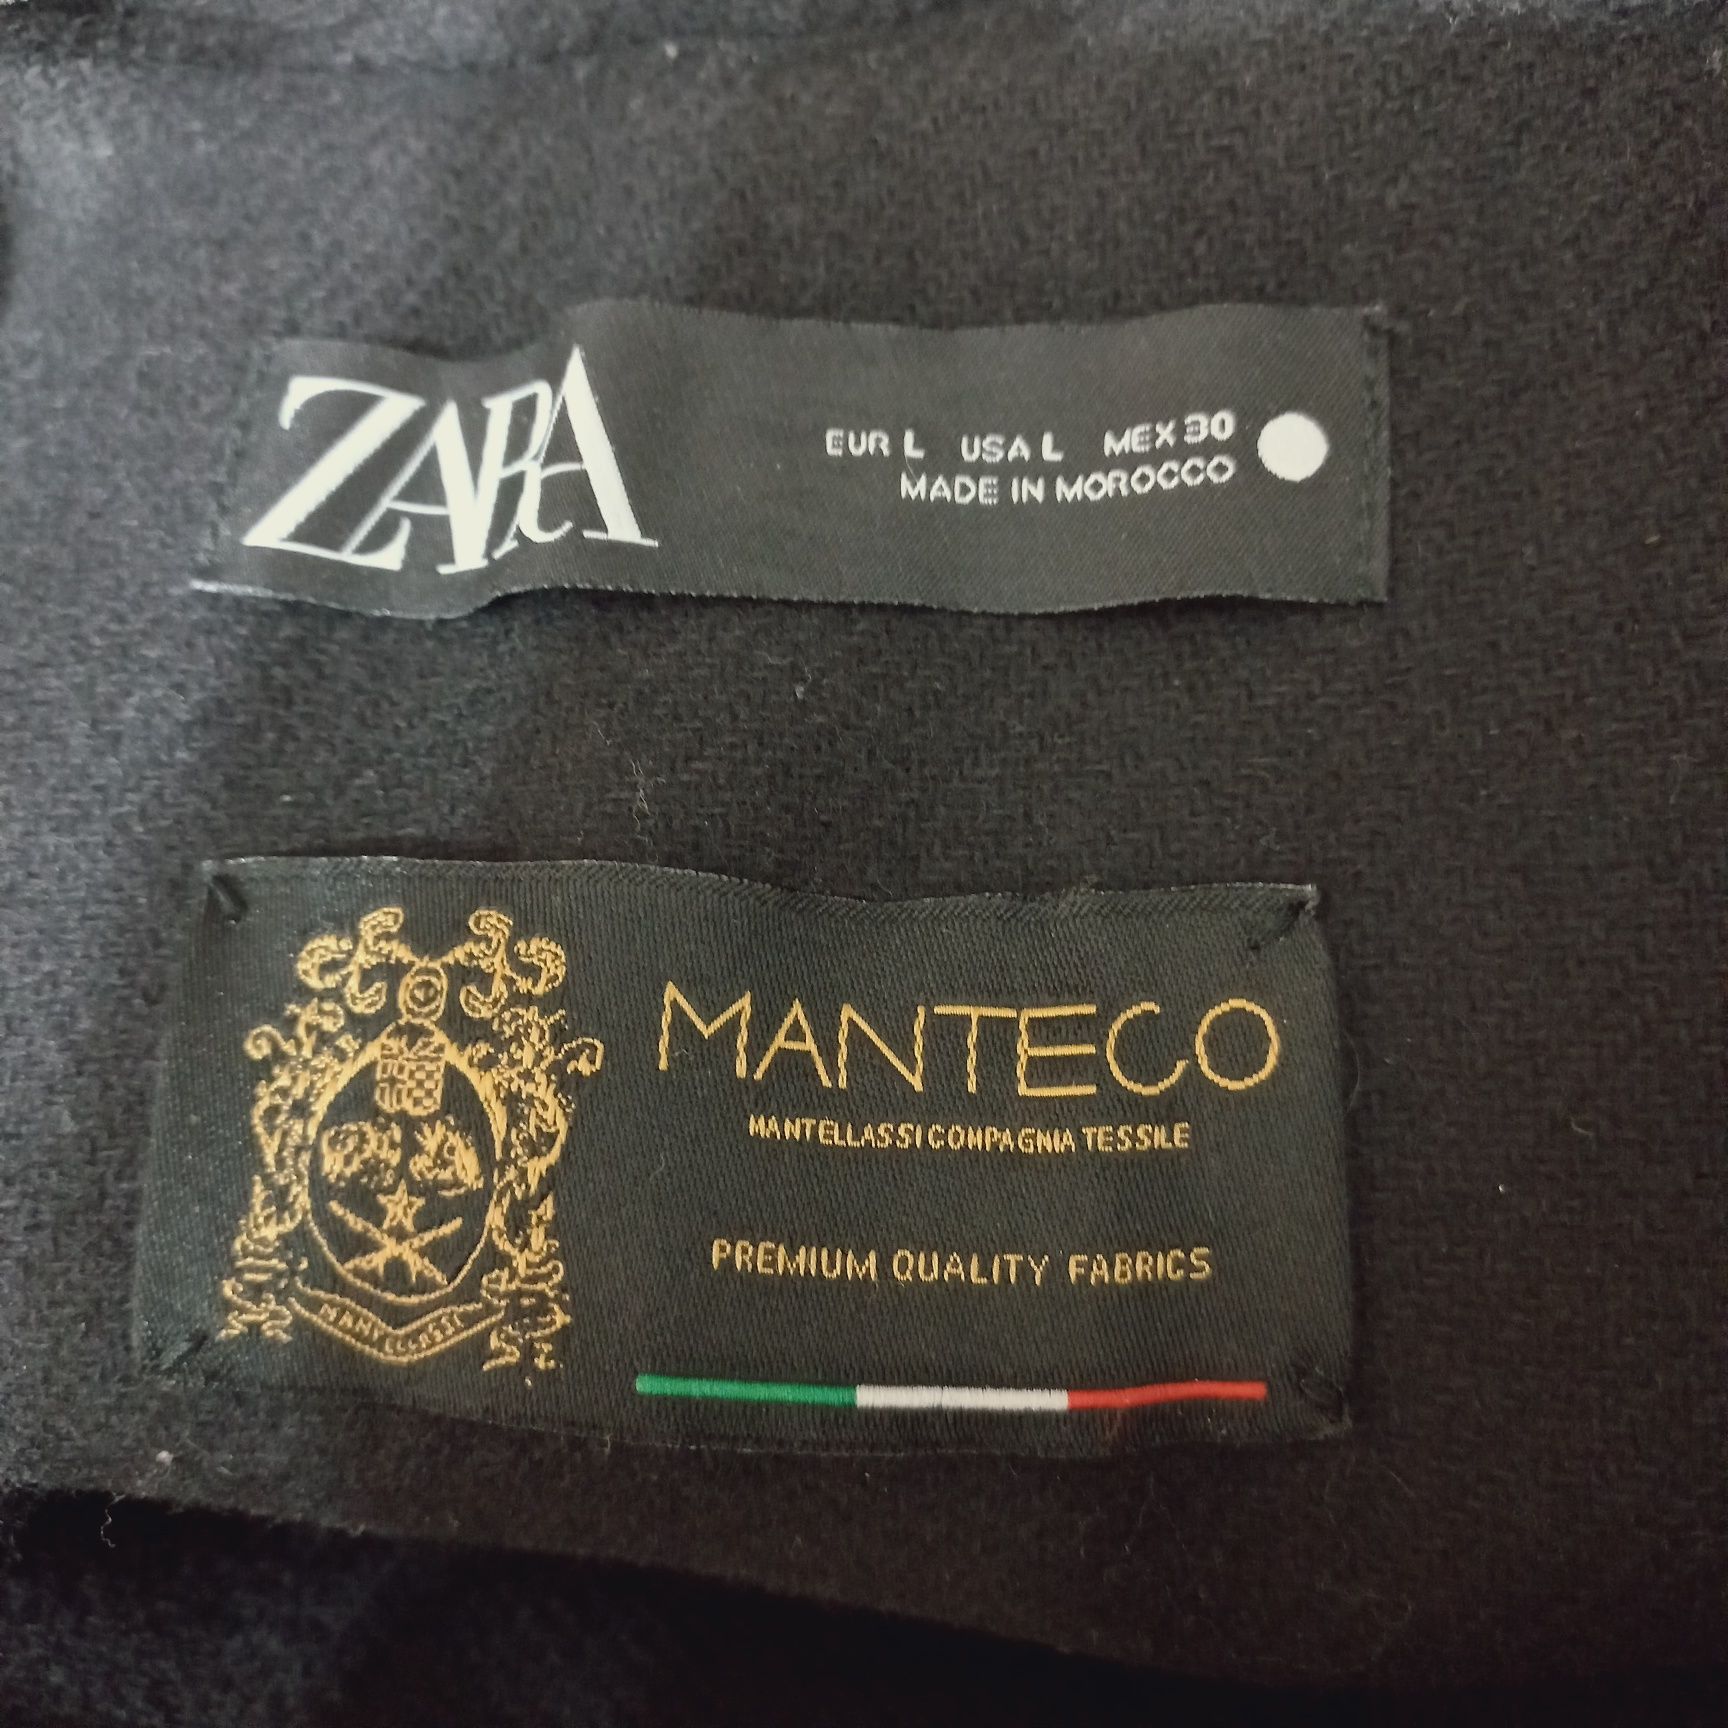 Płaszcz Manteco Zara Limited